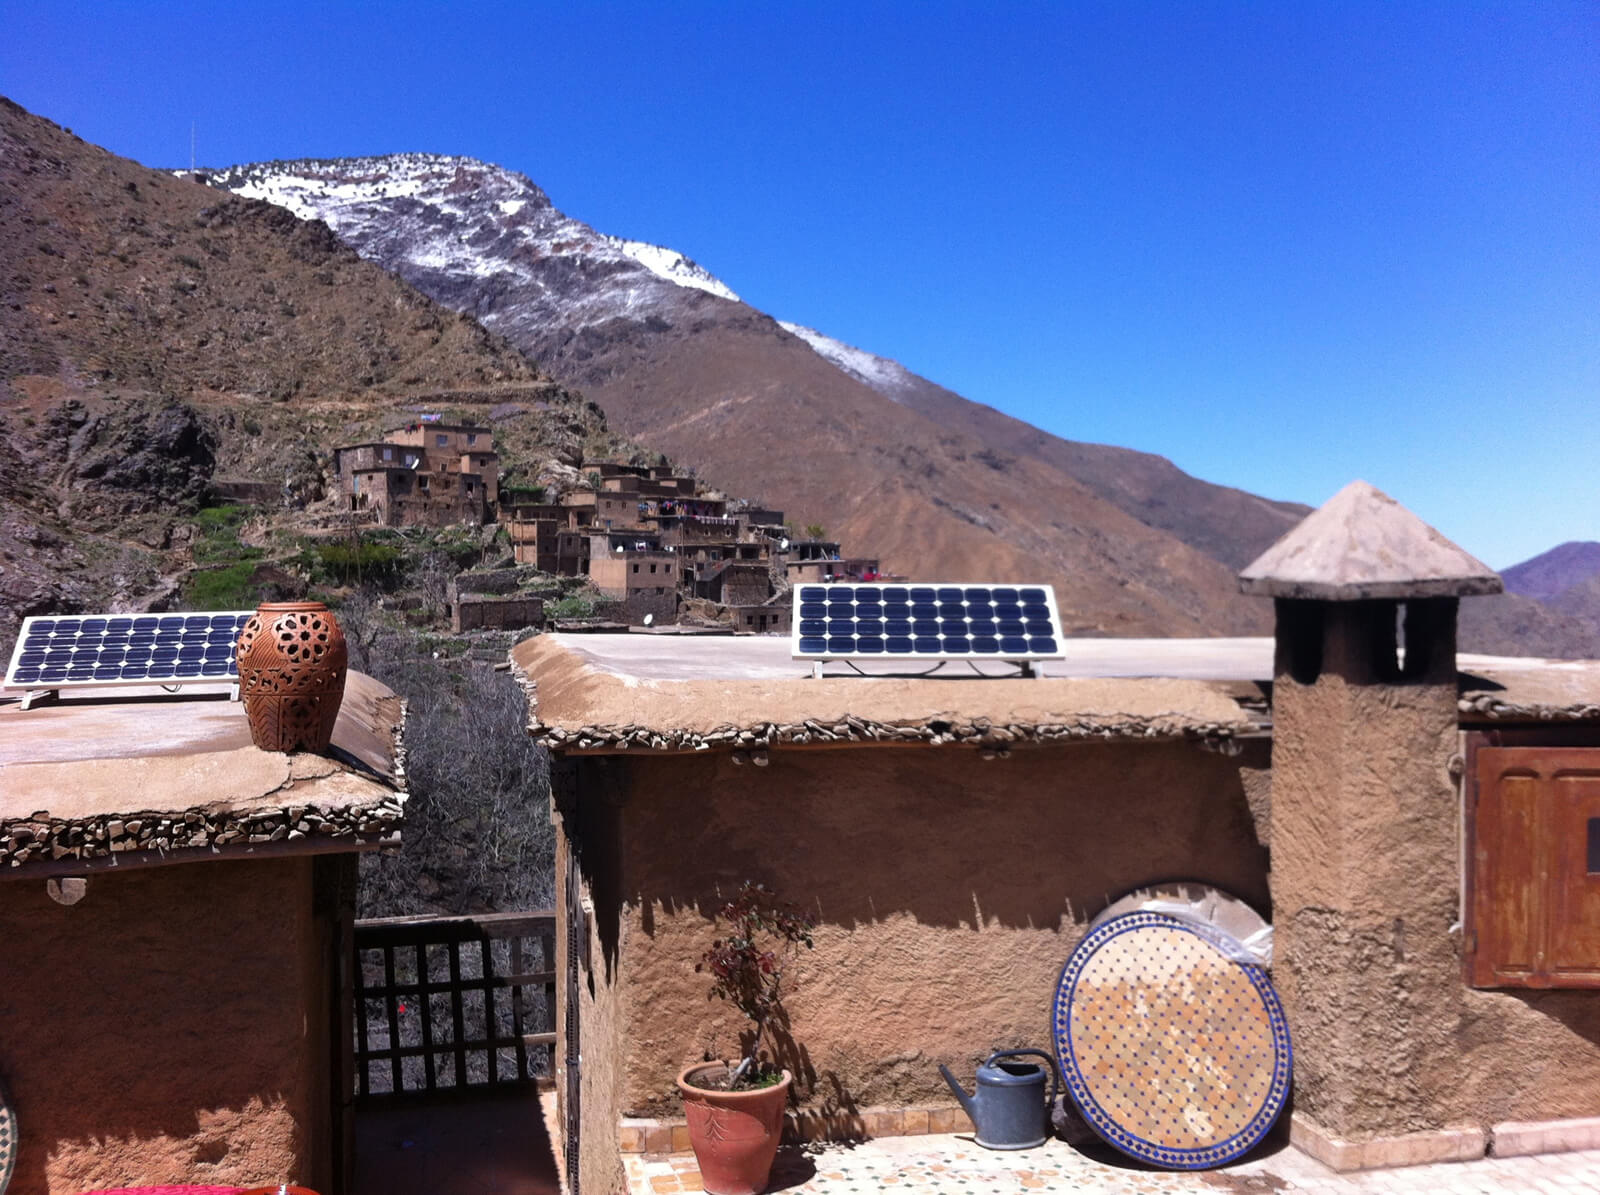 Solarsystem zur Energieversorgung in einem marokkanischem Dorf.